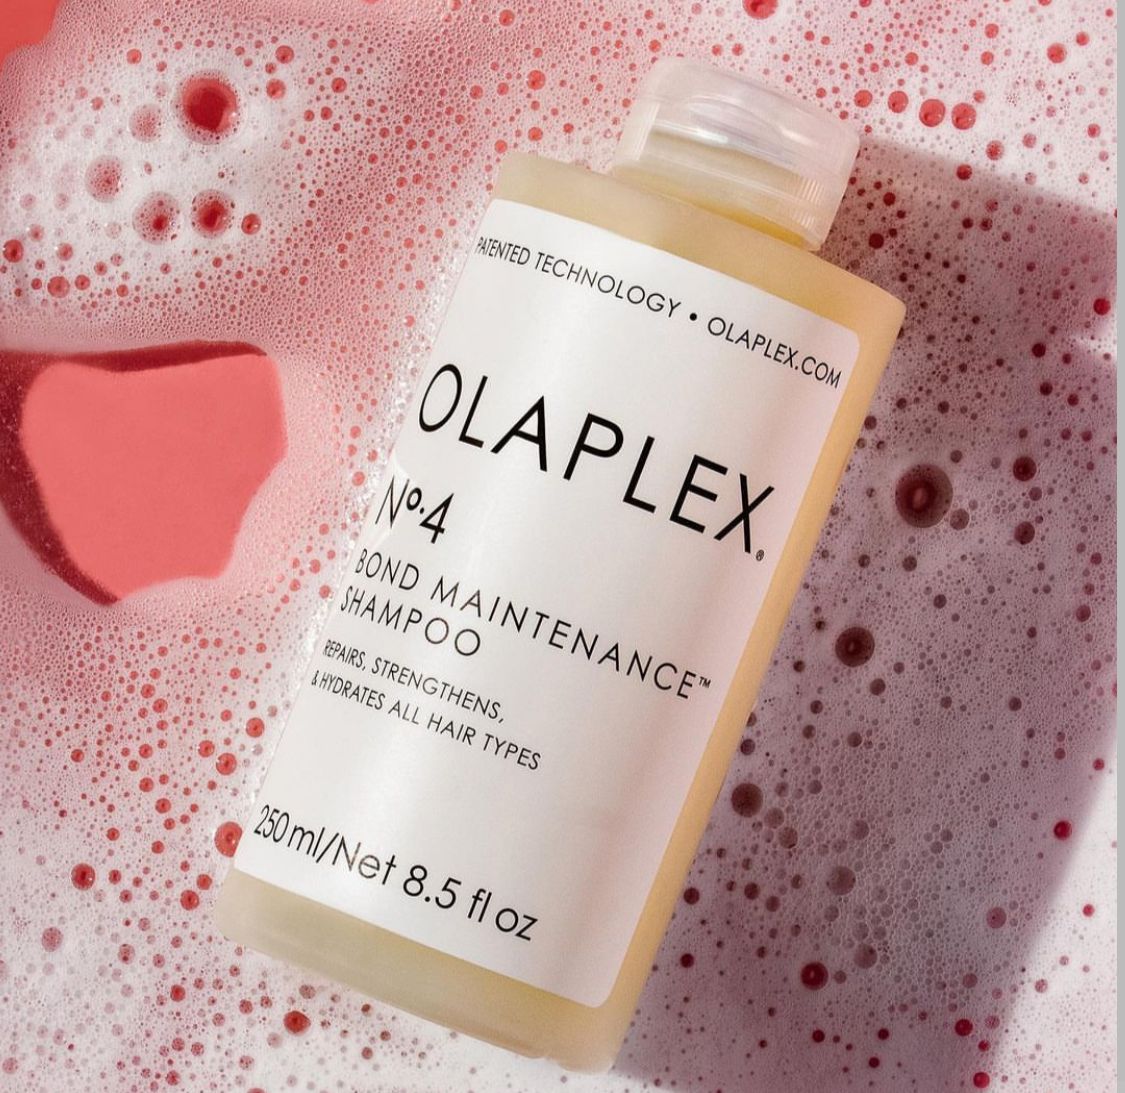 Olaplex bond maintenance shampoo N°4